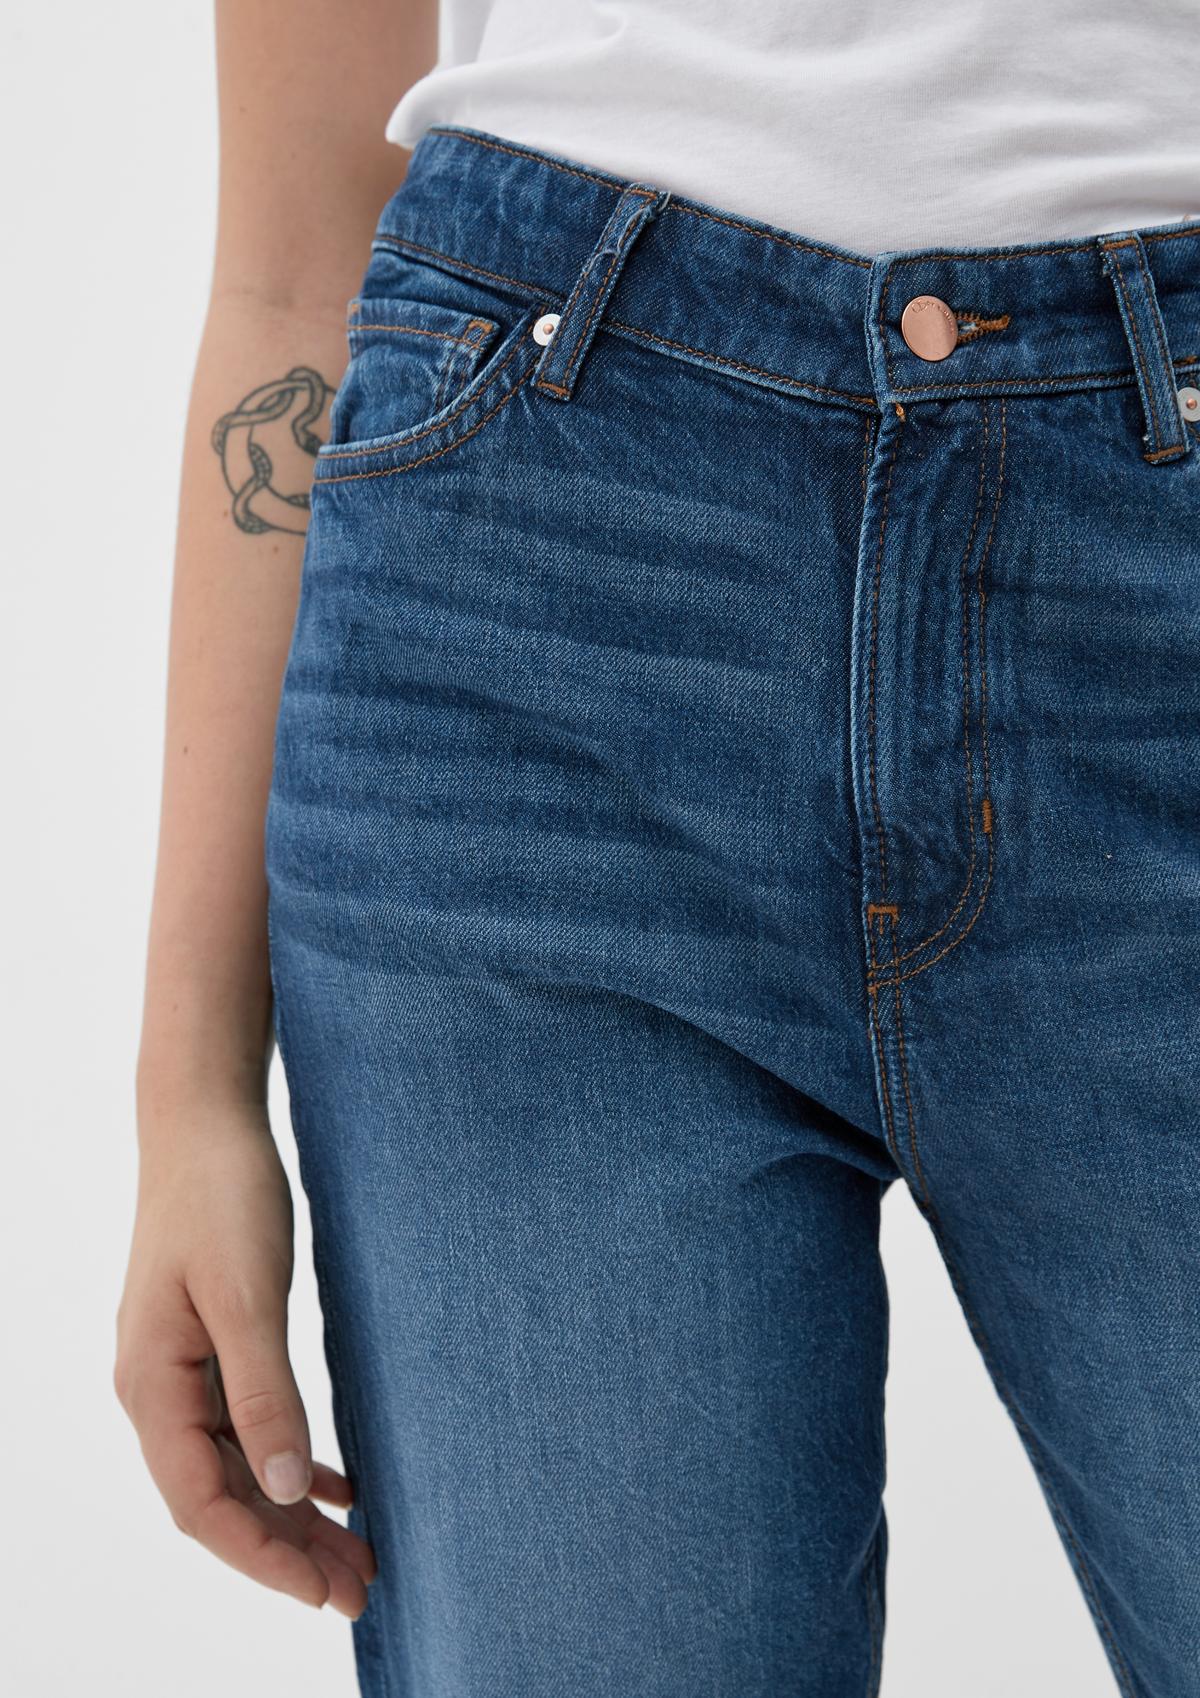 s.Oliver Slim: jeans hlače kroja Mum do gležnjev